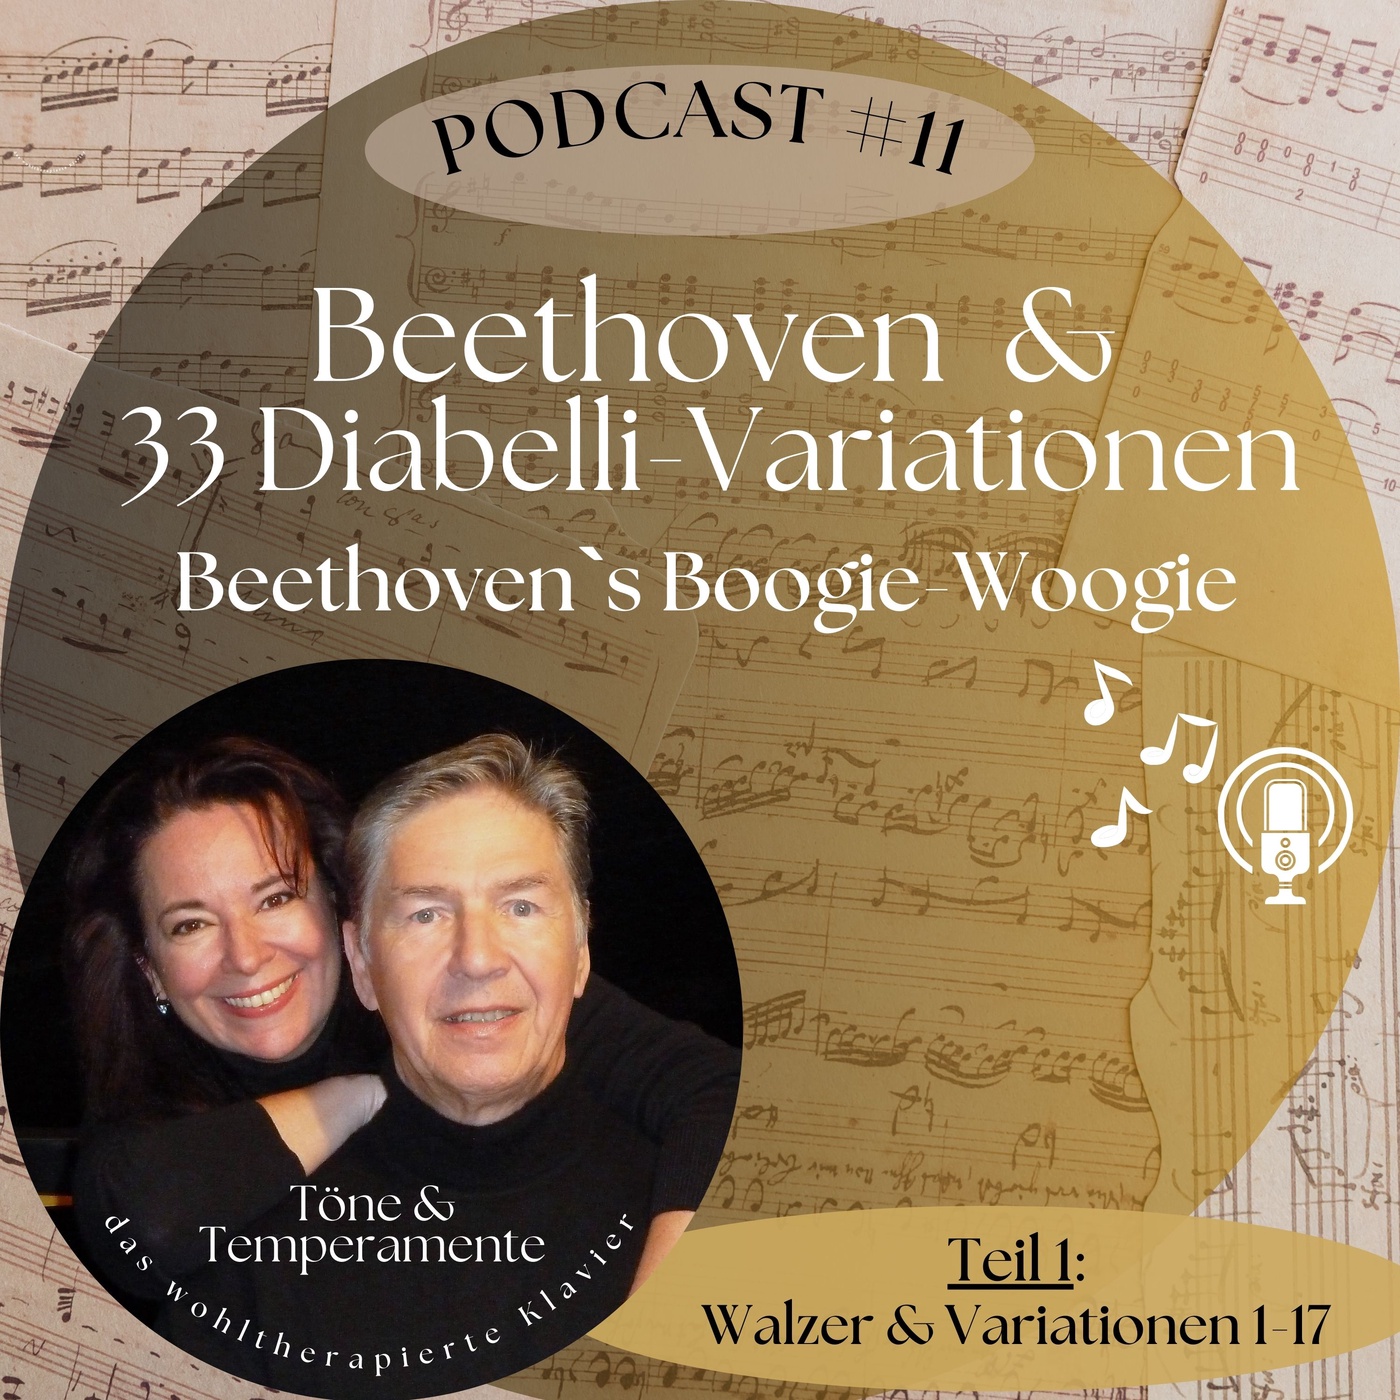 #11 Beethoven & 33 Diabelli Variationen - Beethoven`s Boogie-Woogie?